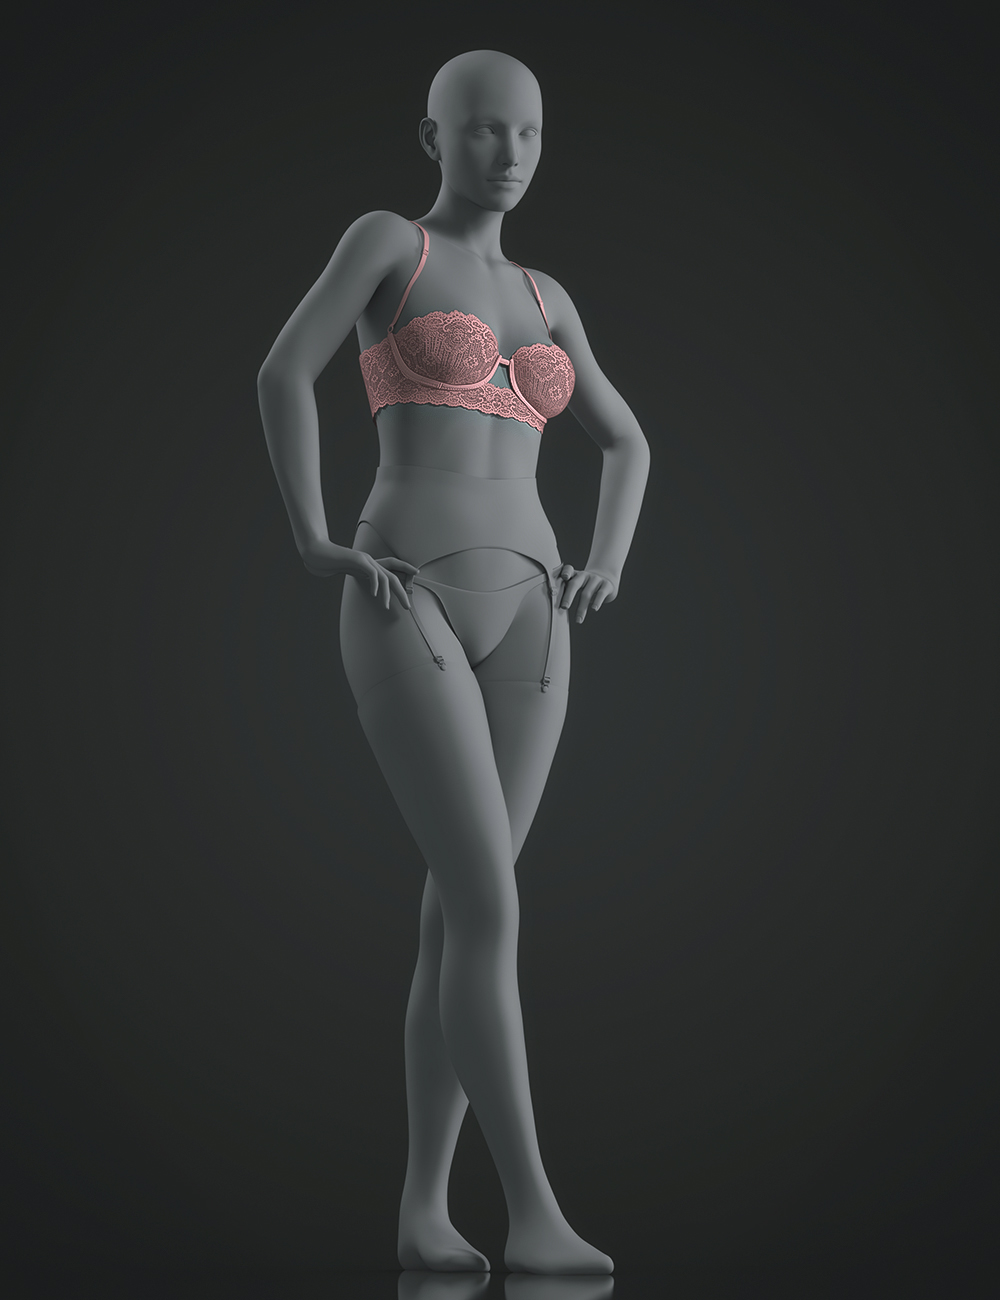 X-Fashion Oh La La Lingerie Set Bra for Genesis 8 and 8.1 Female by: xtrart-3d, 3D Models by Daz 3D